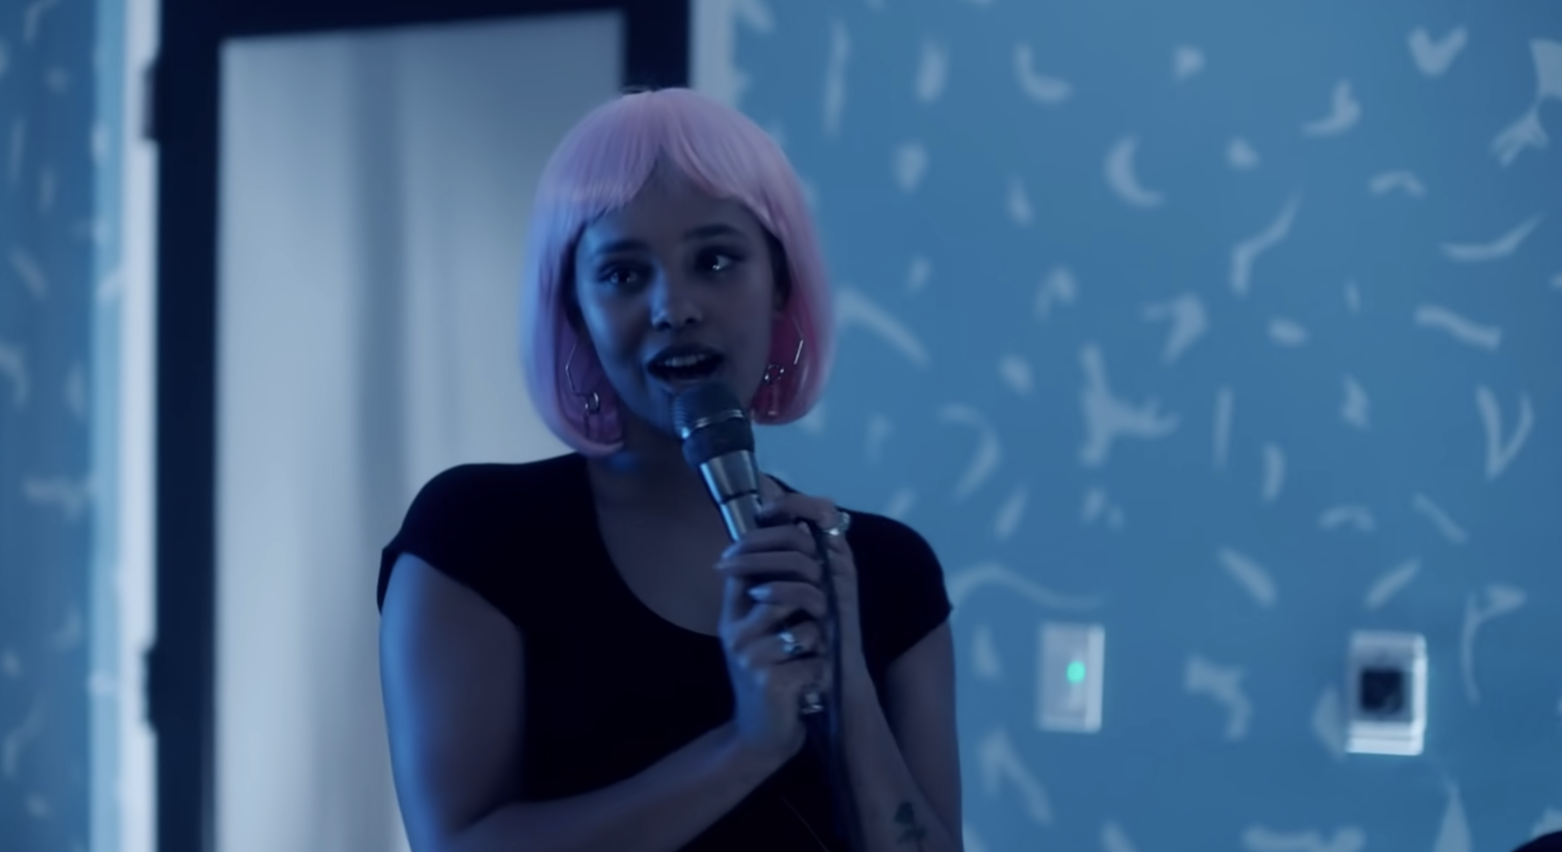 Alisha, in a pink wig, singing karaoke. 